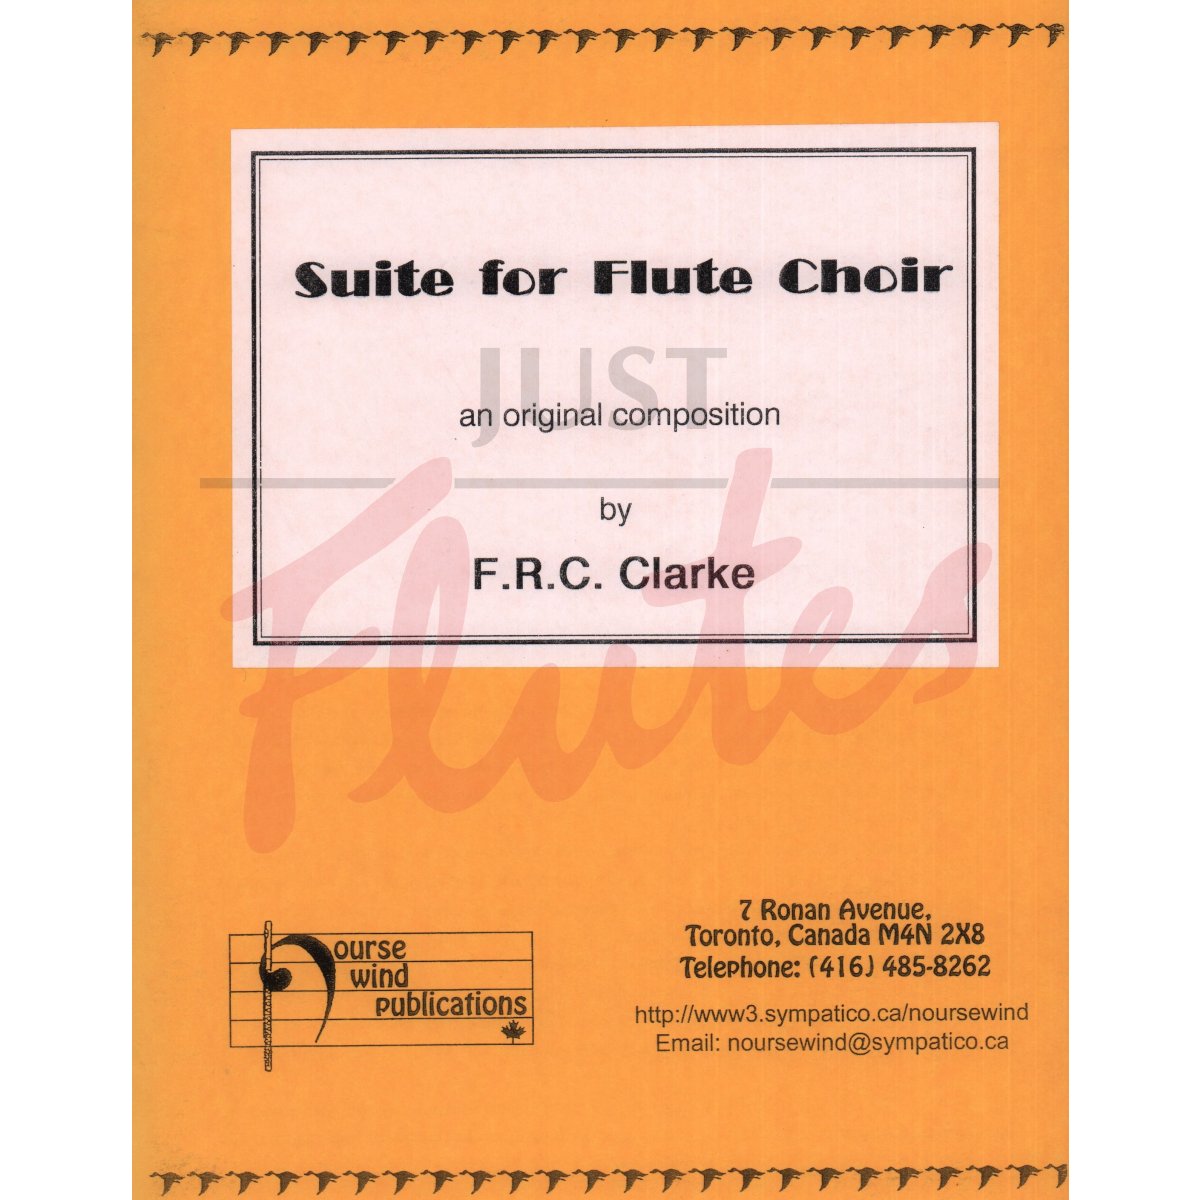 Suite for Flute Choir